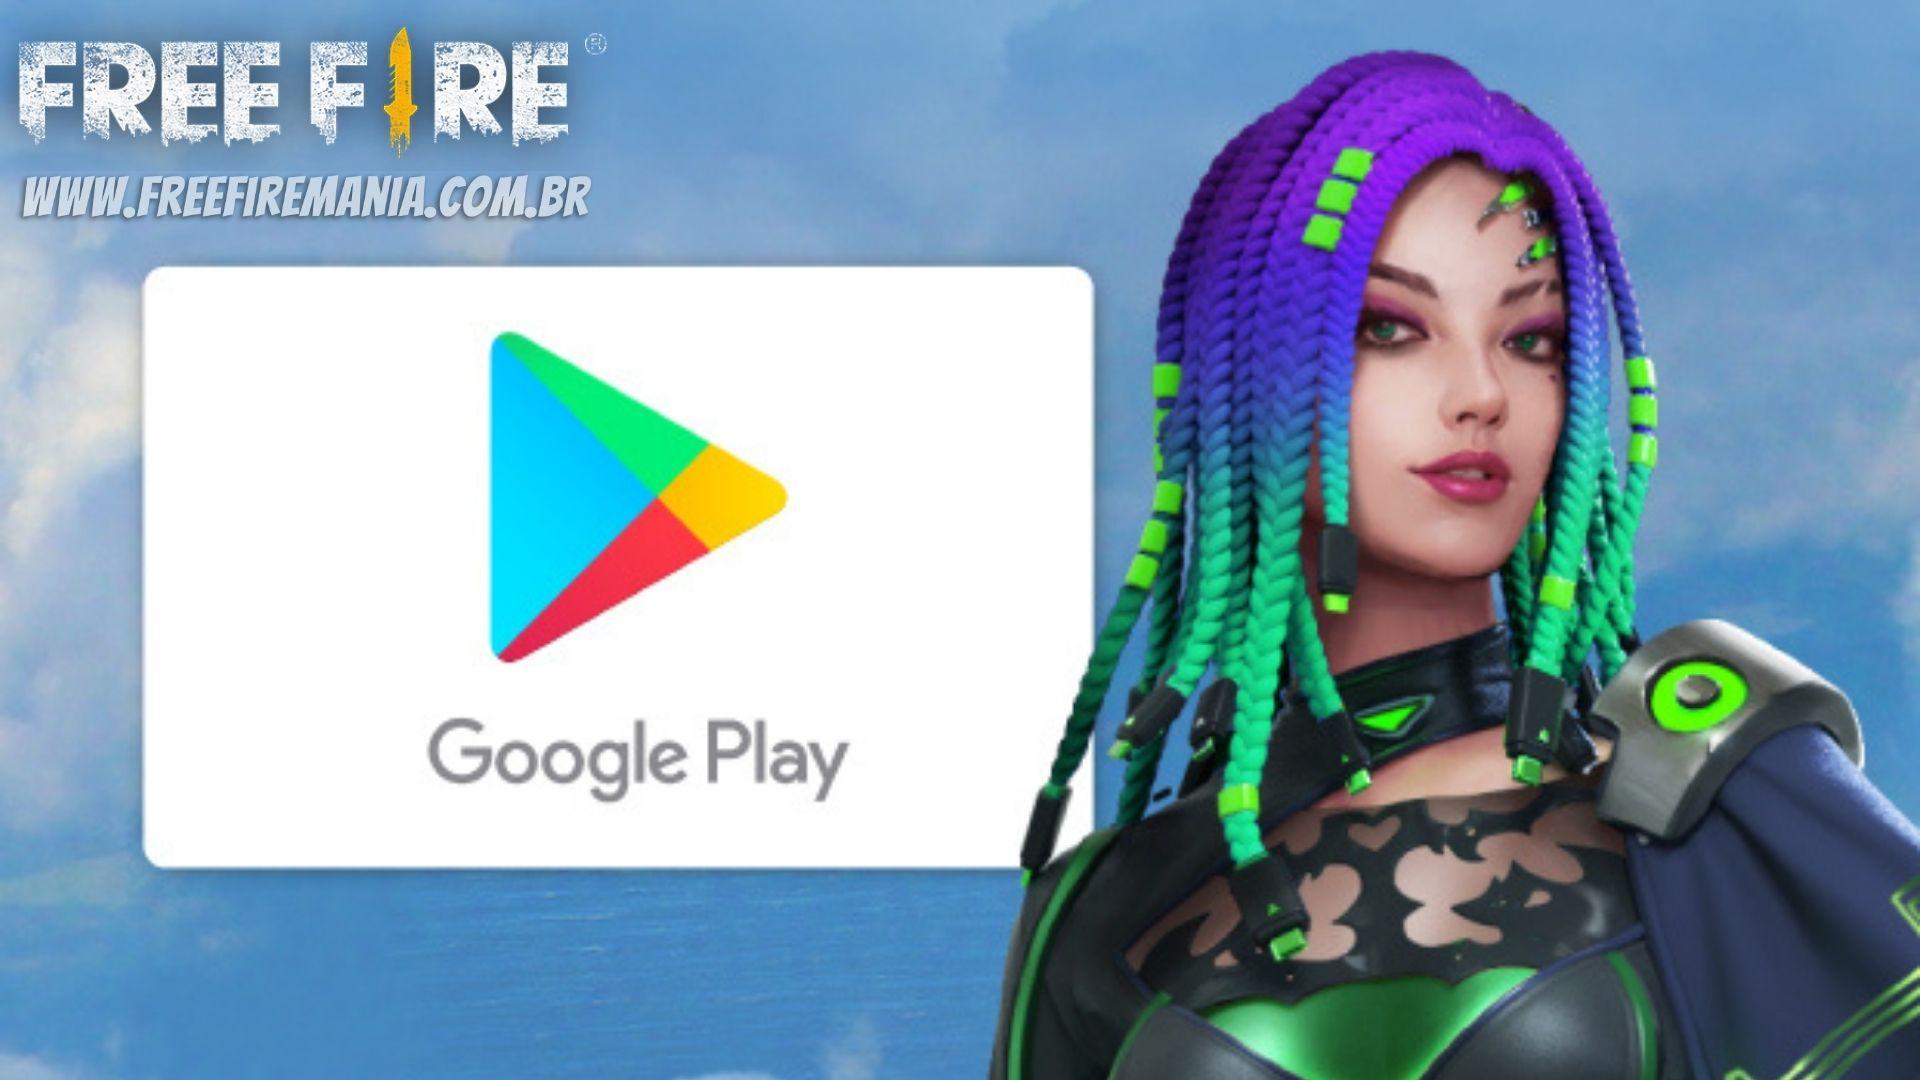 Free Fire é o jogo o mais baixado do Google Play em julho